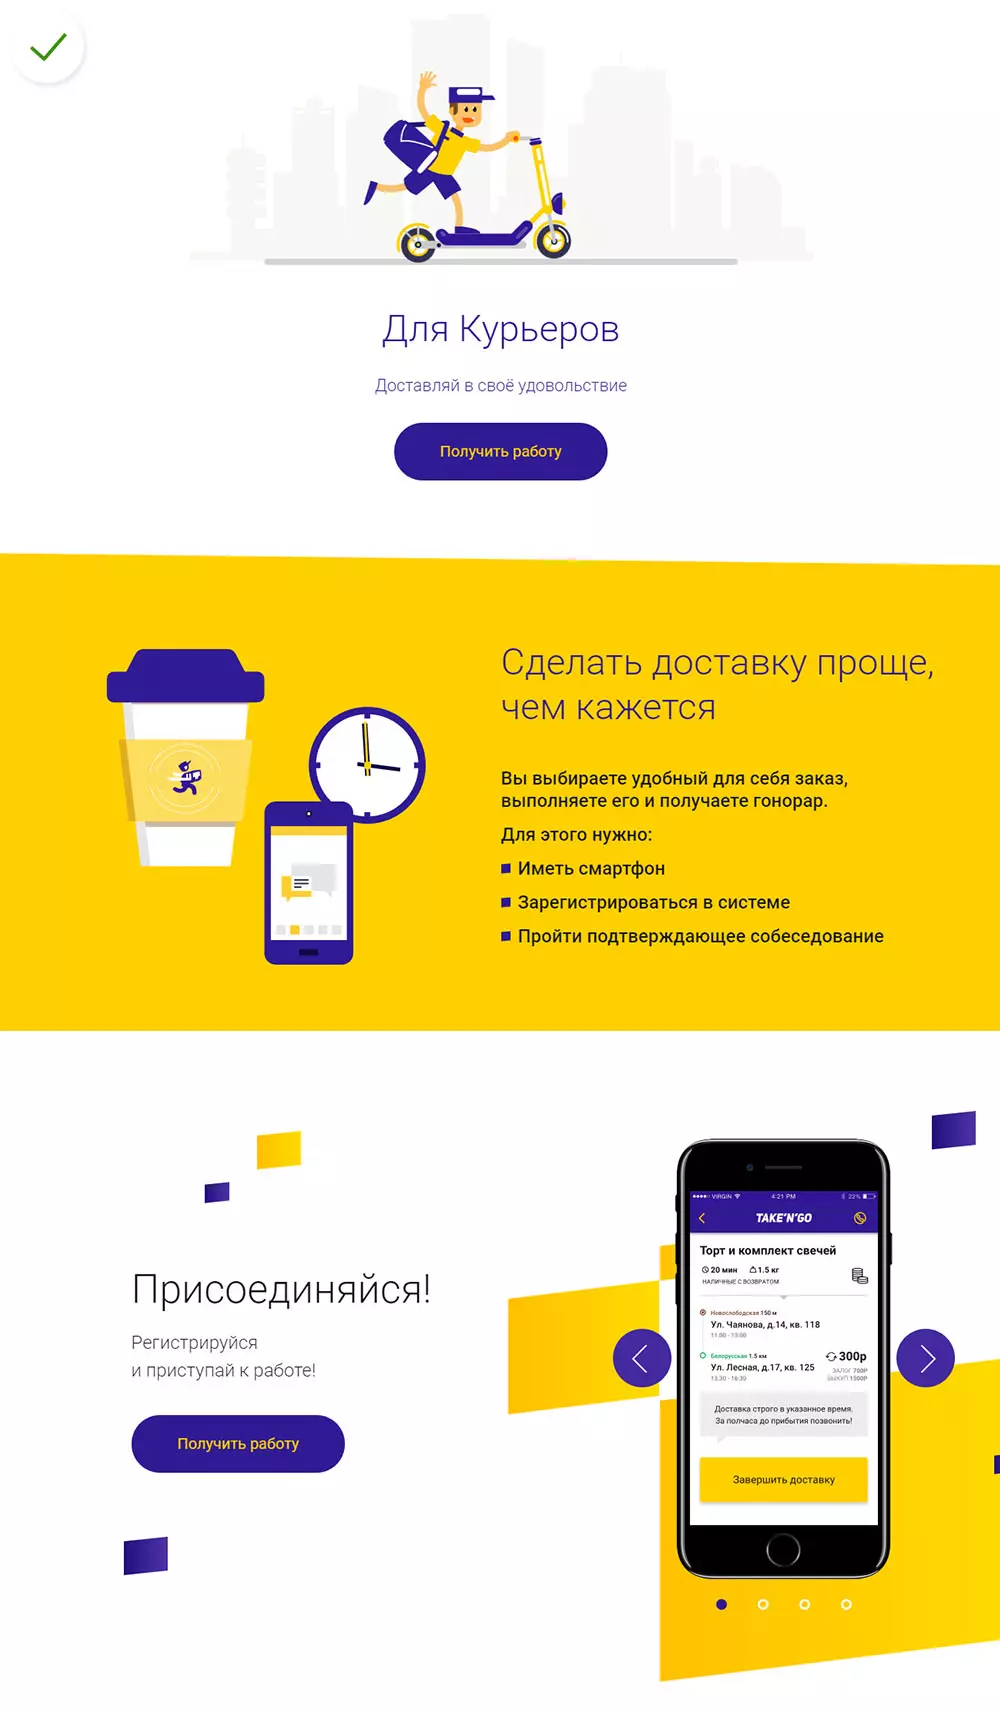 Служба доставки takengo.ru использует яркие насыщенные цвета, чтобы передать динамику и бодрость.